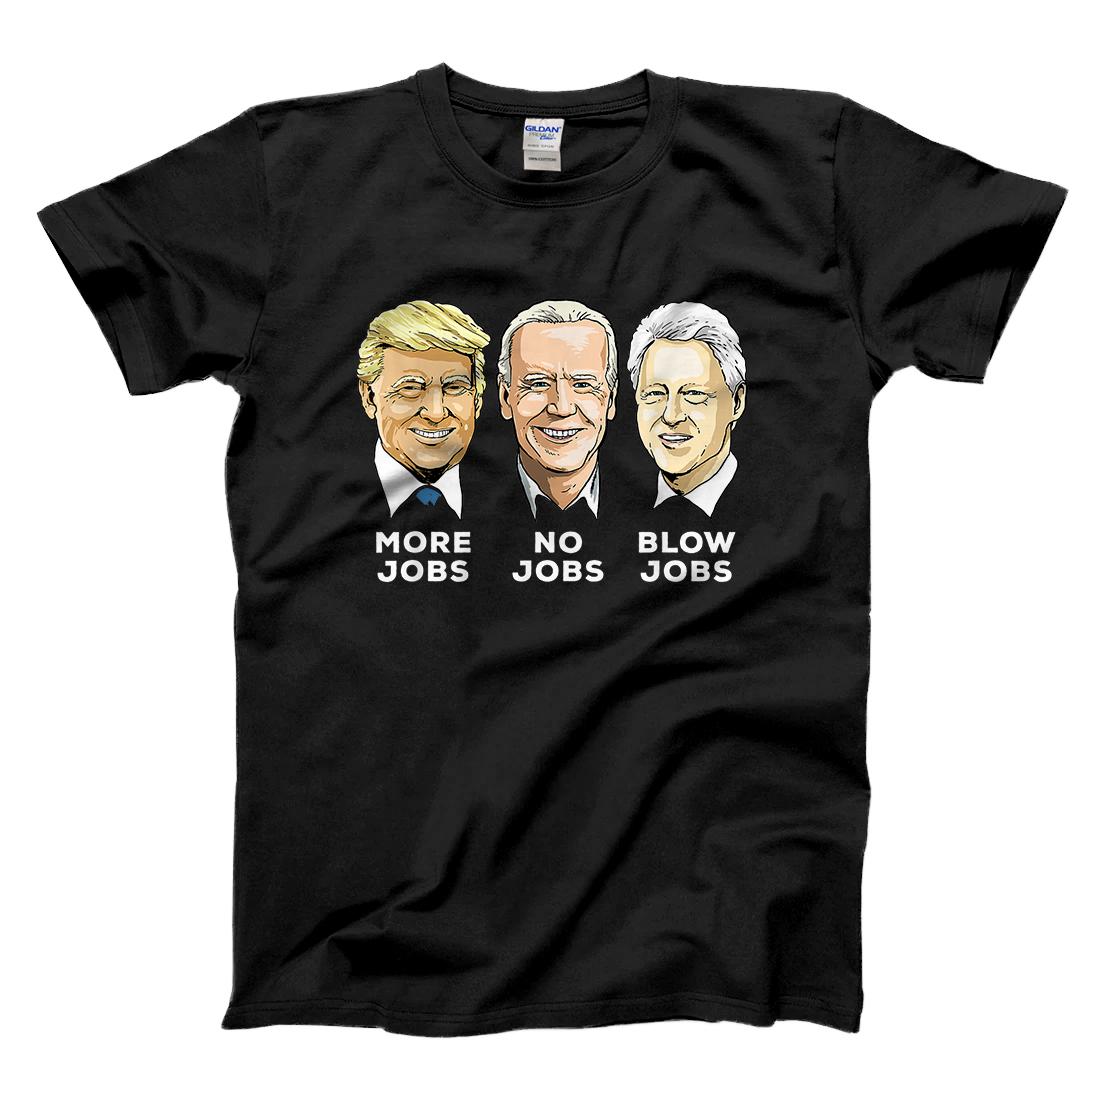 Personalized Donald Trump More Jobs Biden No Jobs Bill Clinton Blow Jobs T-Shirt